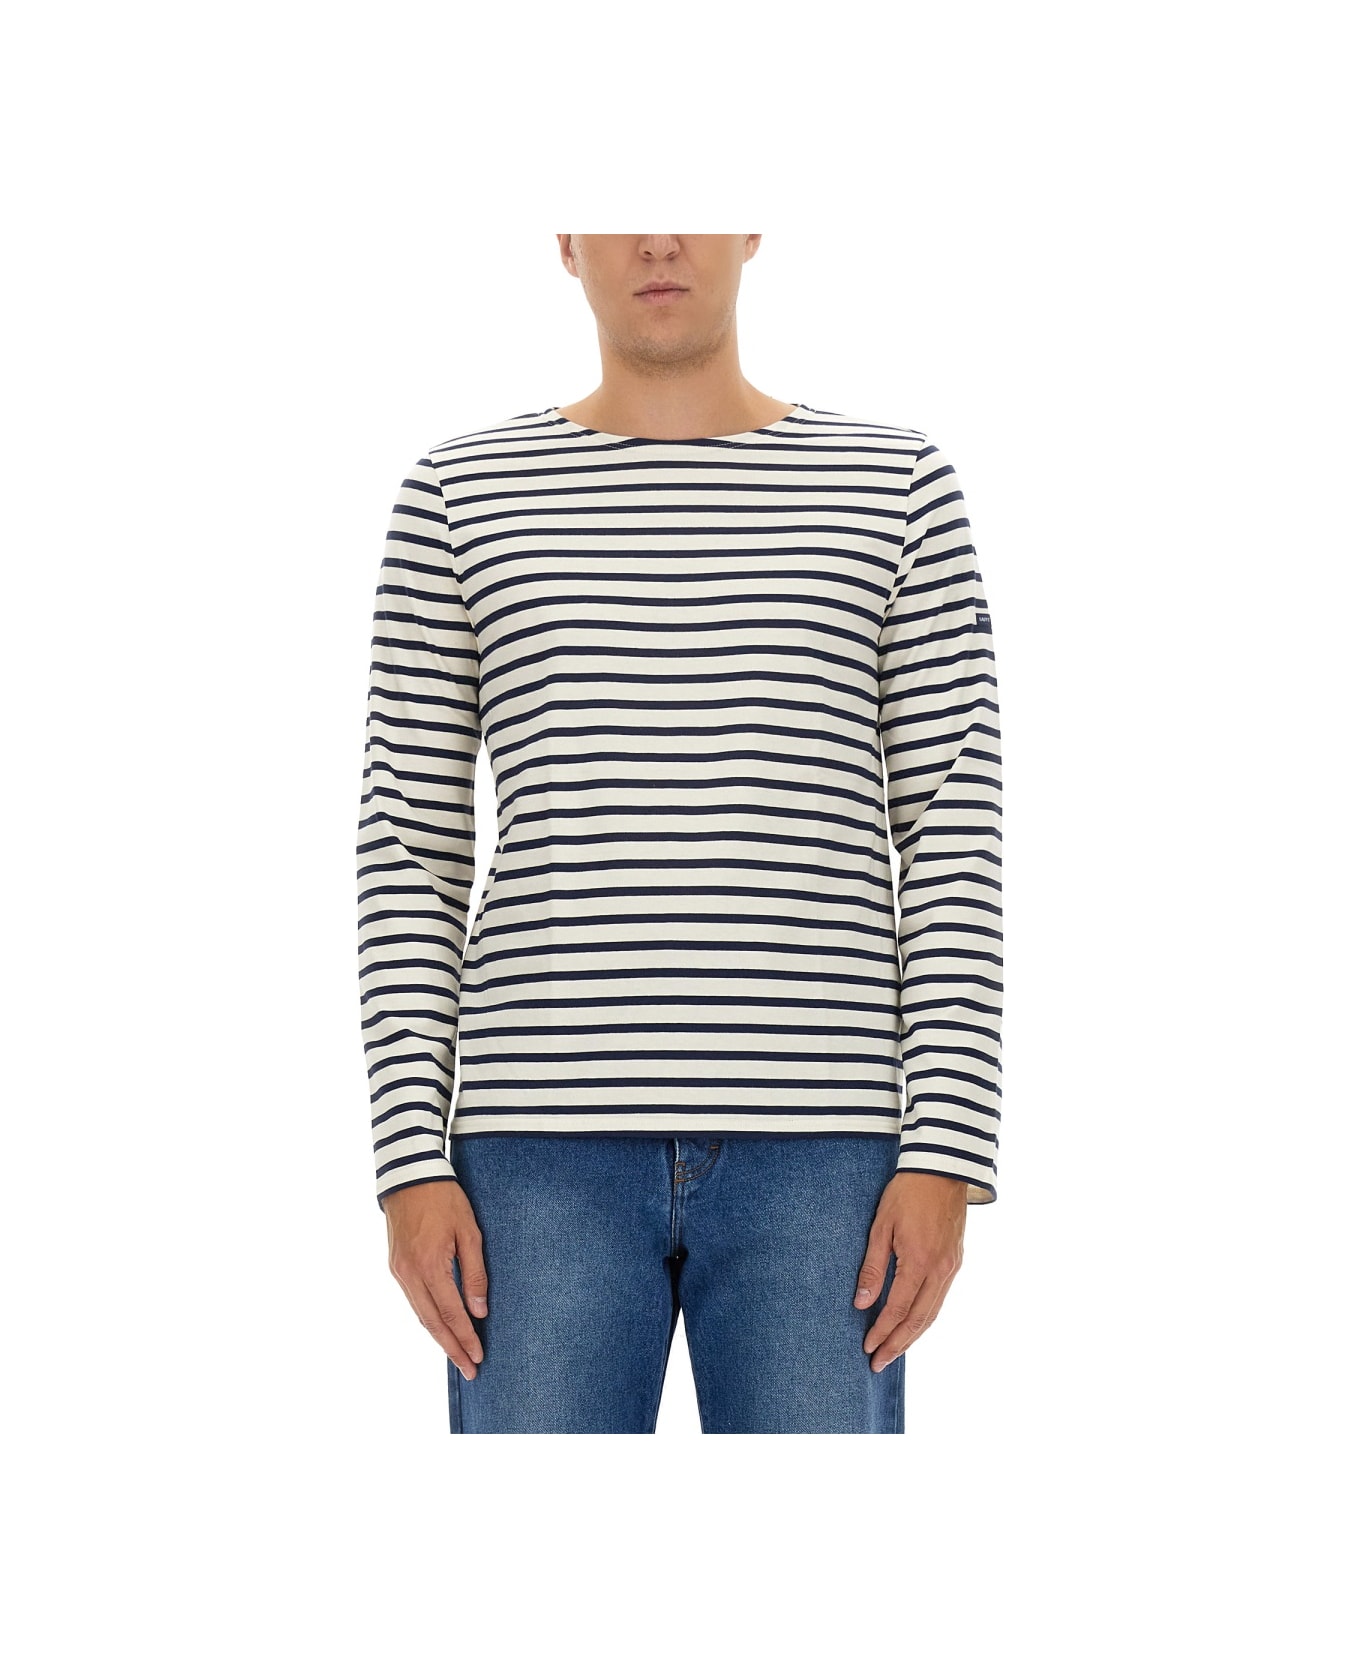 Saint James Striped T-shirt - MULTICOLOUR シャツ